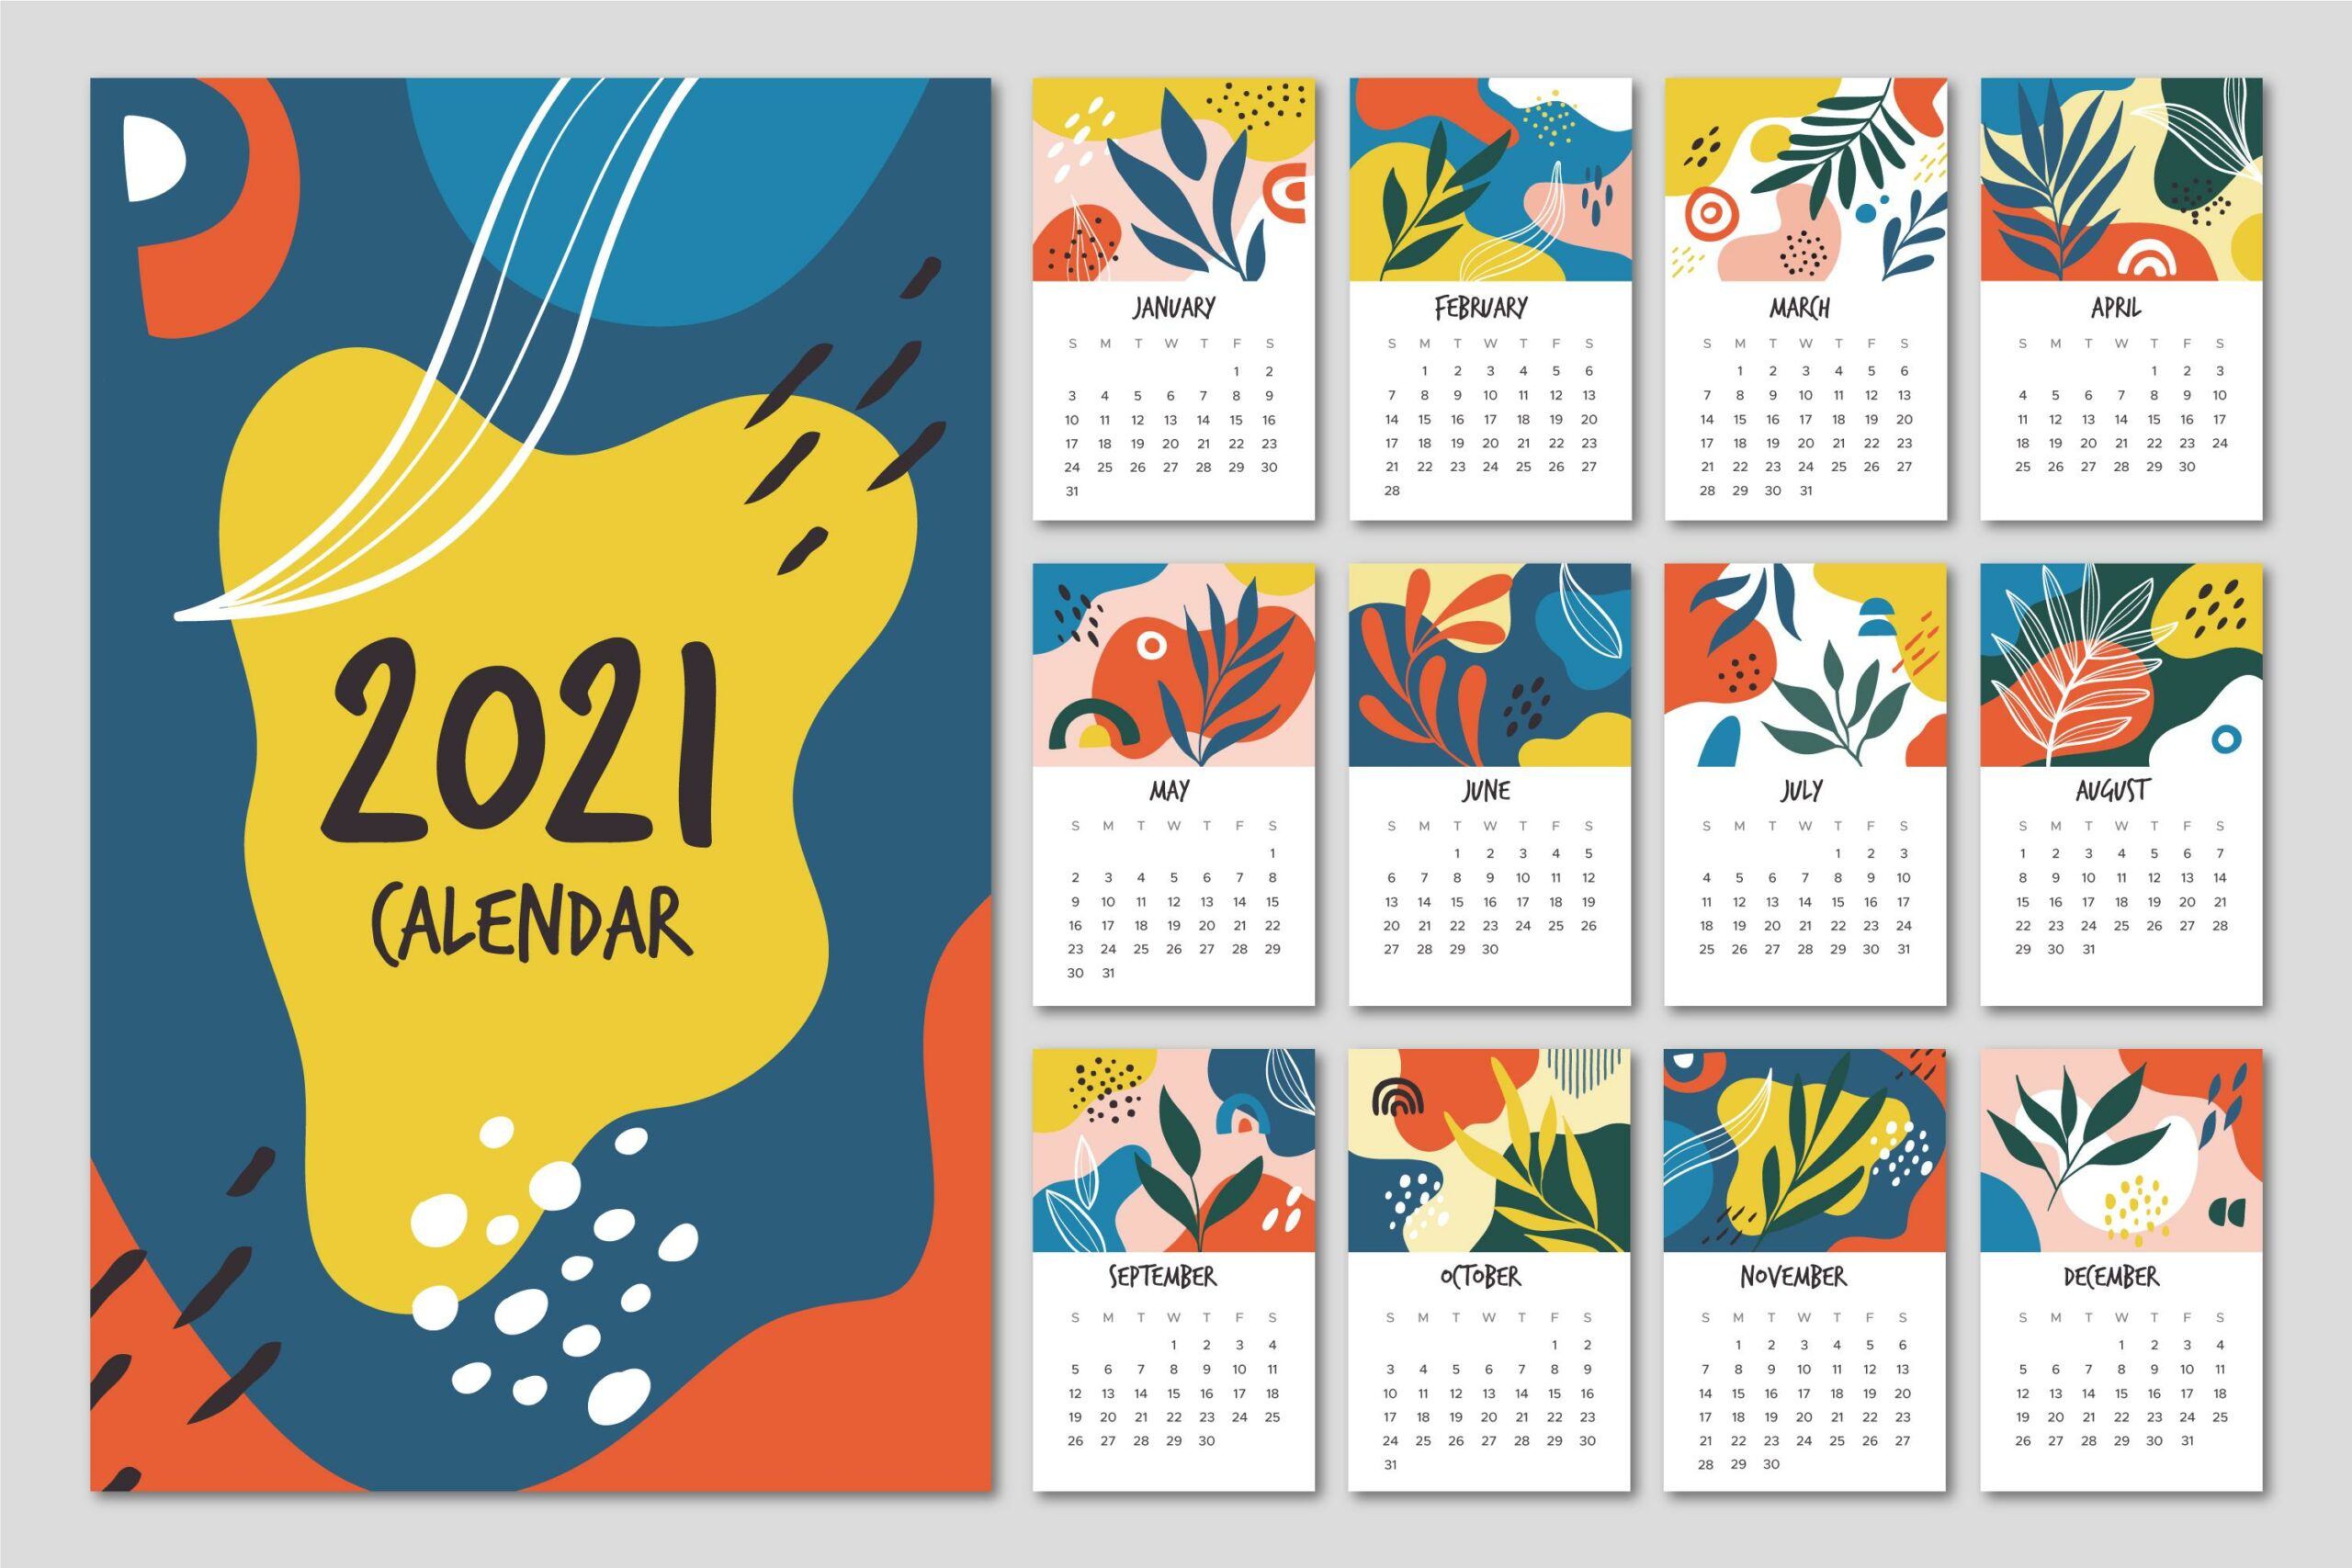 Calendario 2021 Feriados Datas Comemorativas E Ideias De Conteudo Para As Redes Sociais